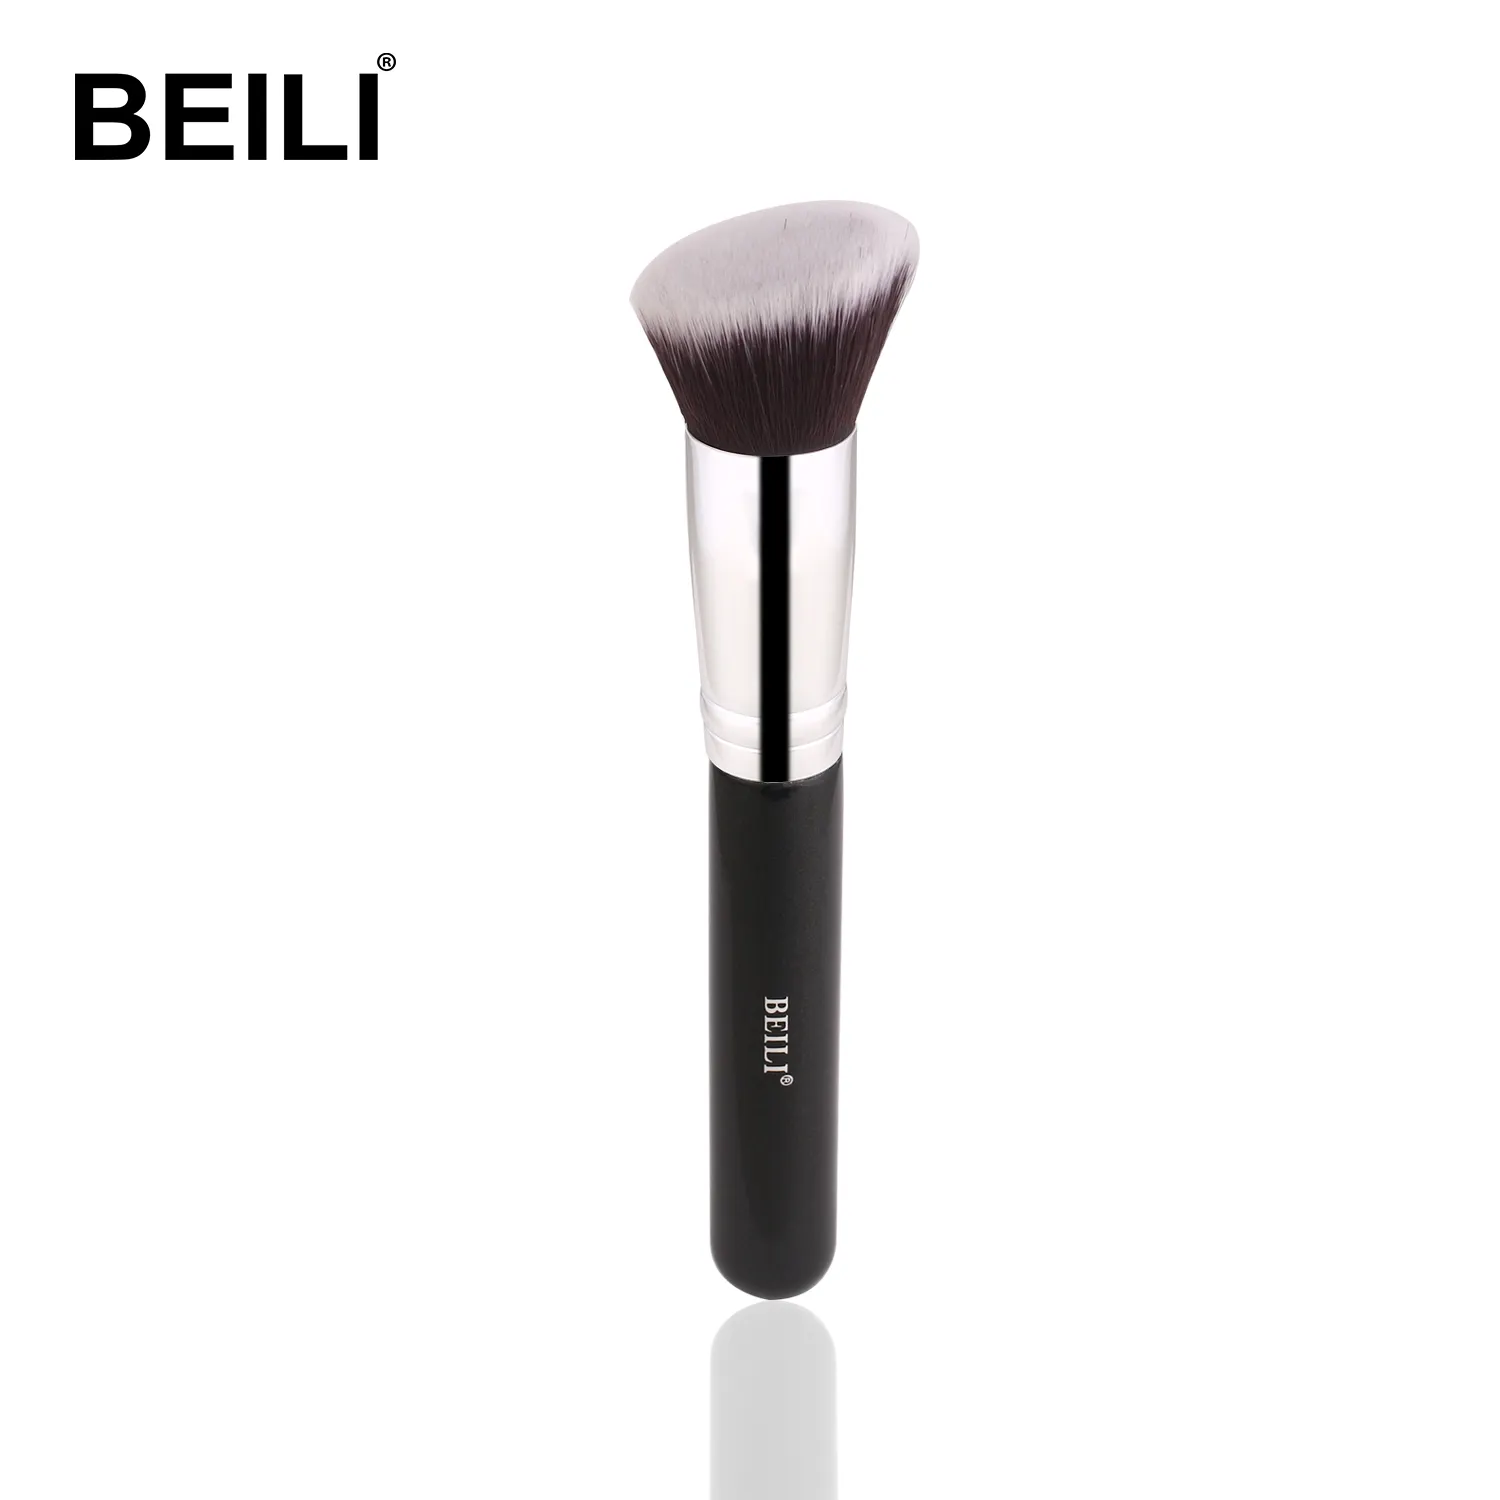 BEILI custom logo black foundation brush large flat round kabuki foundation brush